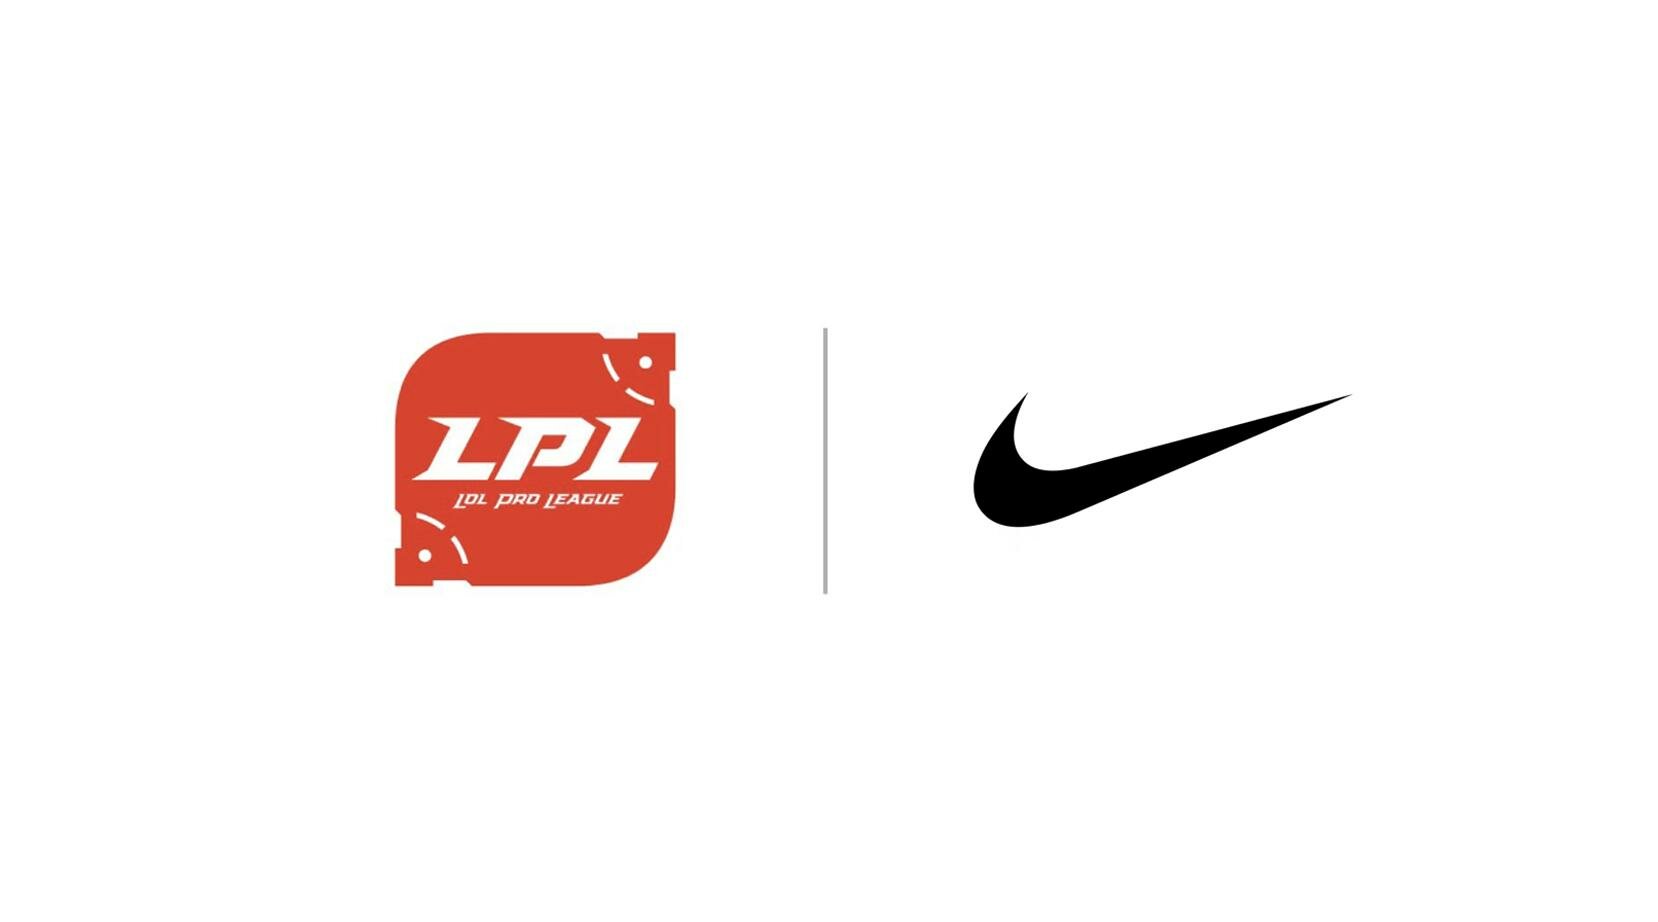 Premier accord entre Nike et LPL